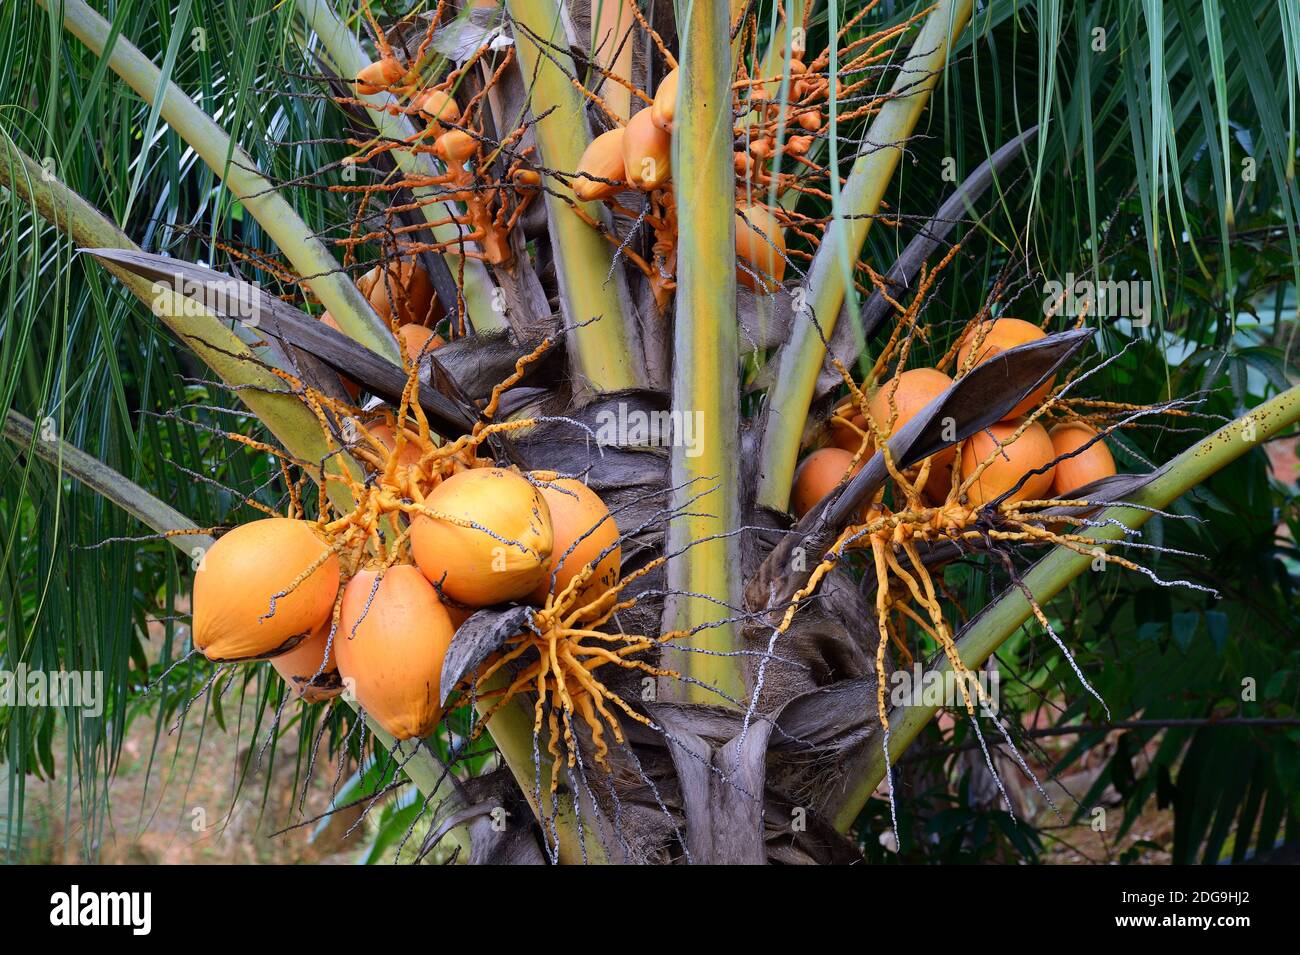 Kokospalme (Cocos nucifera) mit reifen Kokosnüssen, Insel Mahe, Seychellen Stock Photo